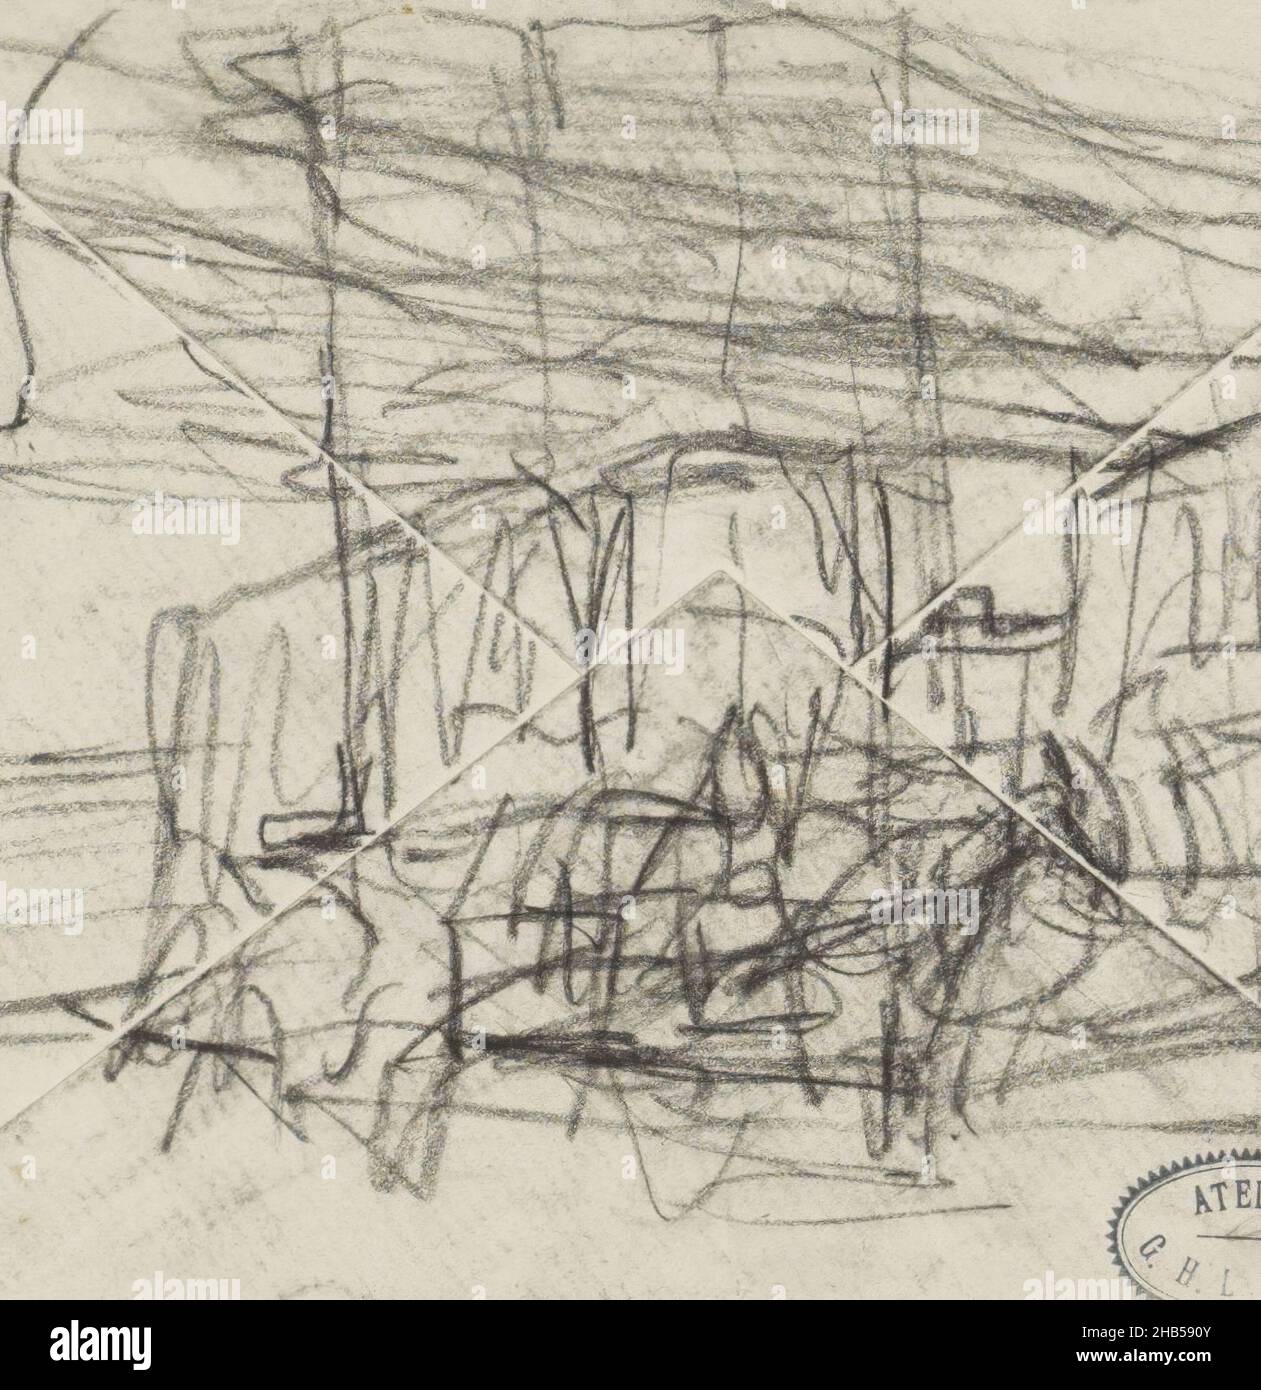 Straßenbahnen, Zeichner: George Hendrik Breitner, Amsterdam, c. 1886 - 1923, H 112 mm × B 144 mm, George Hendrik Breitner, c. 1886 - 1923 Stockfoto